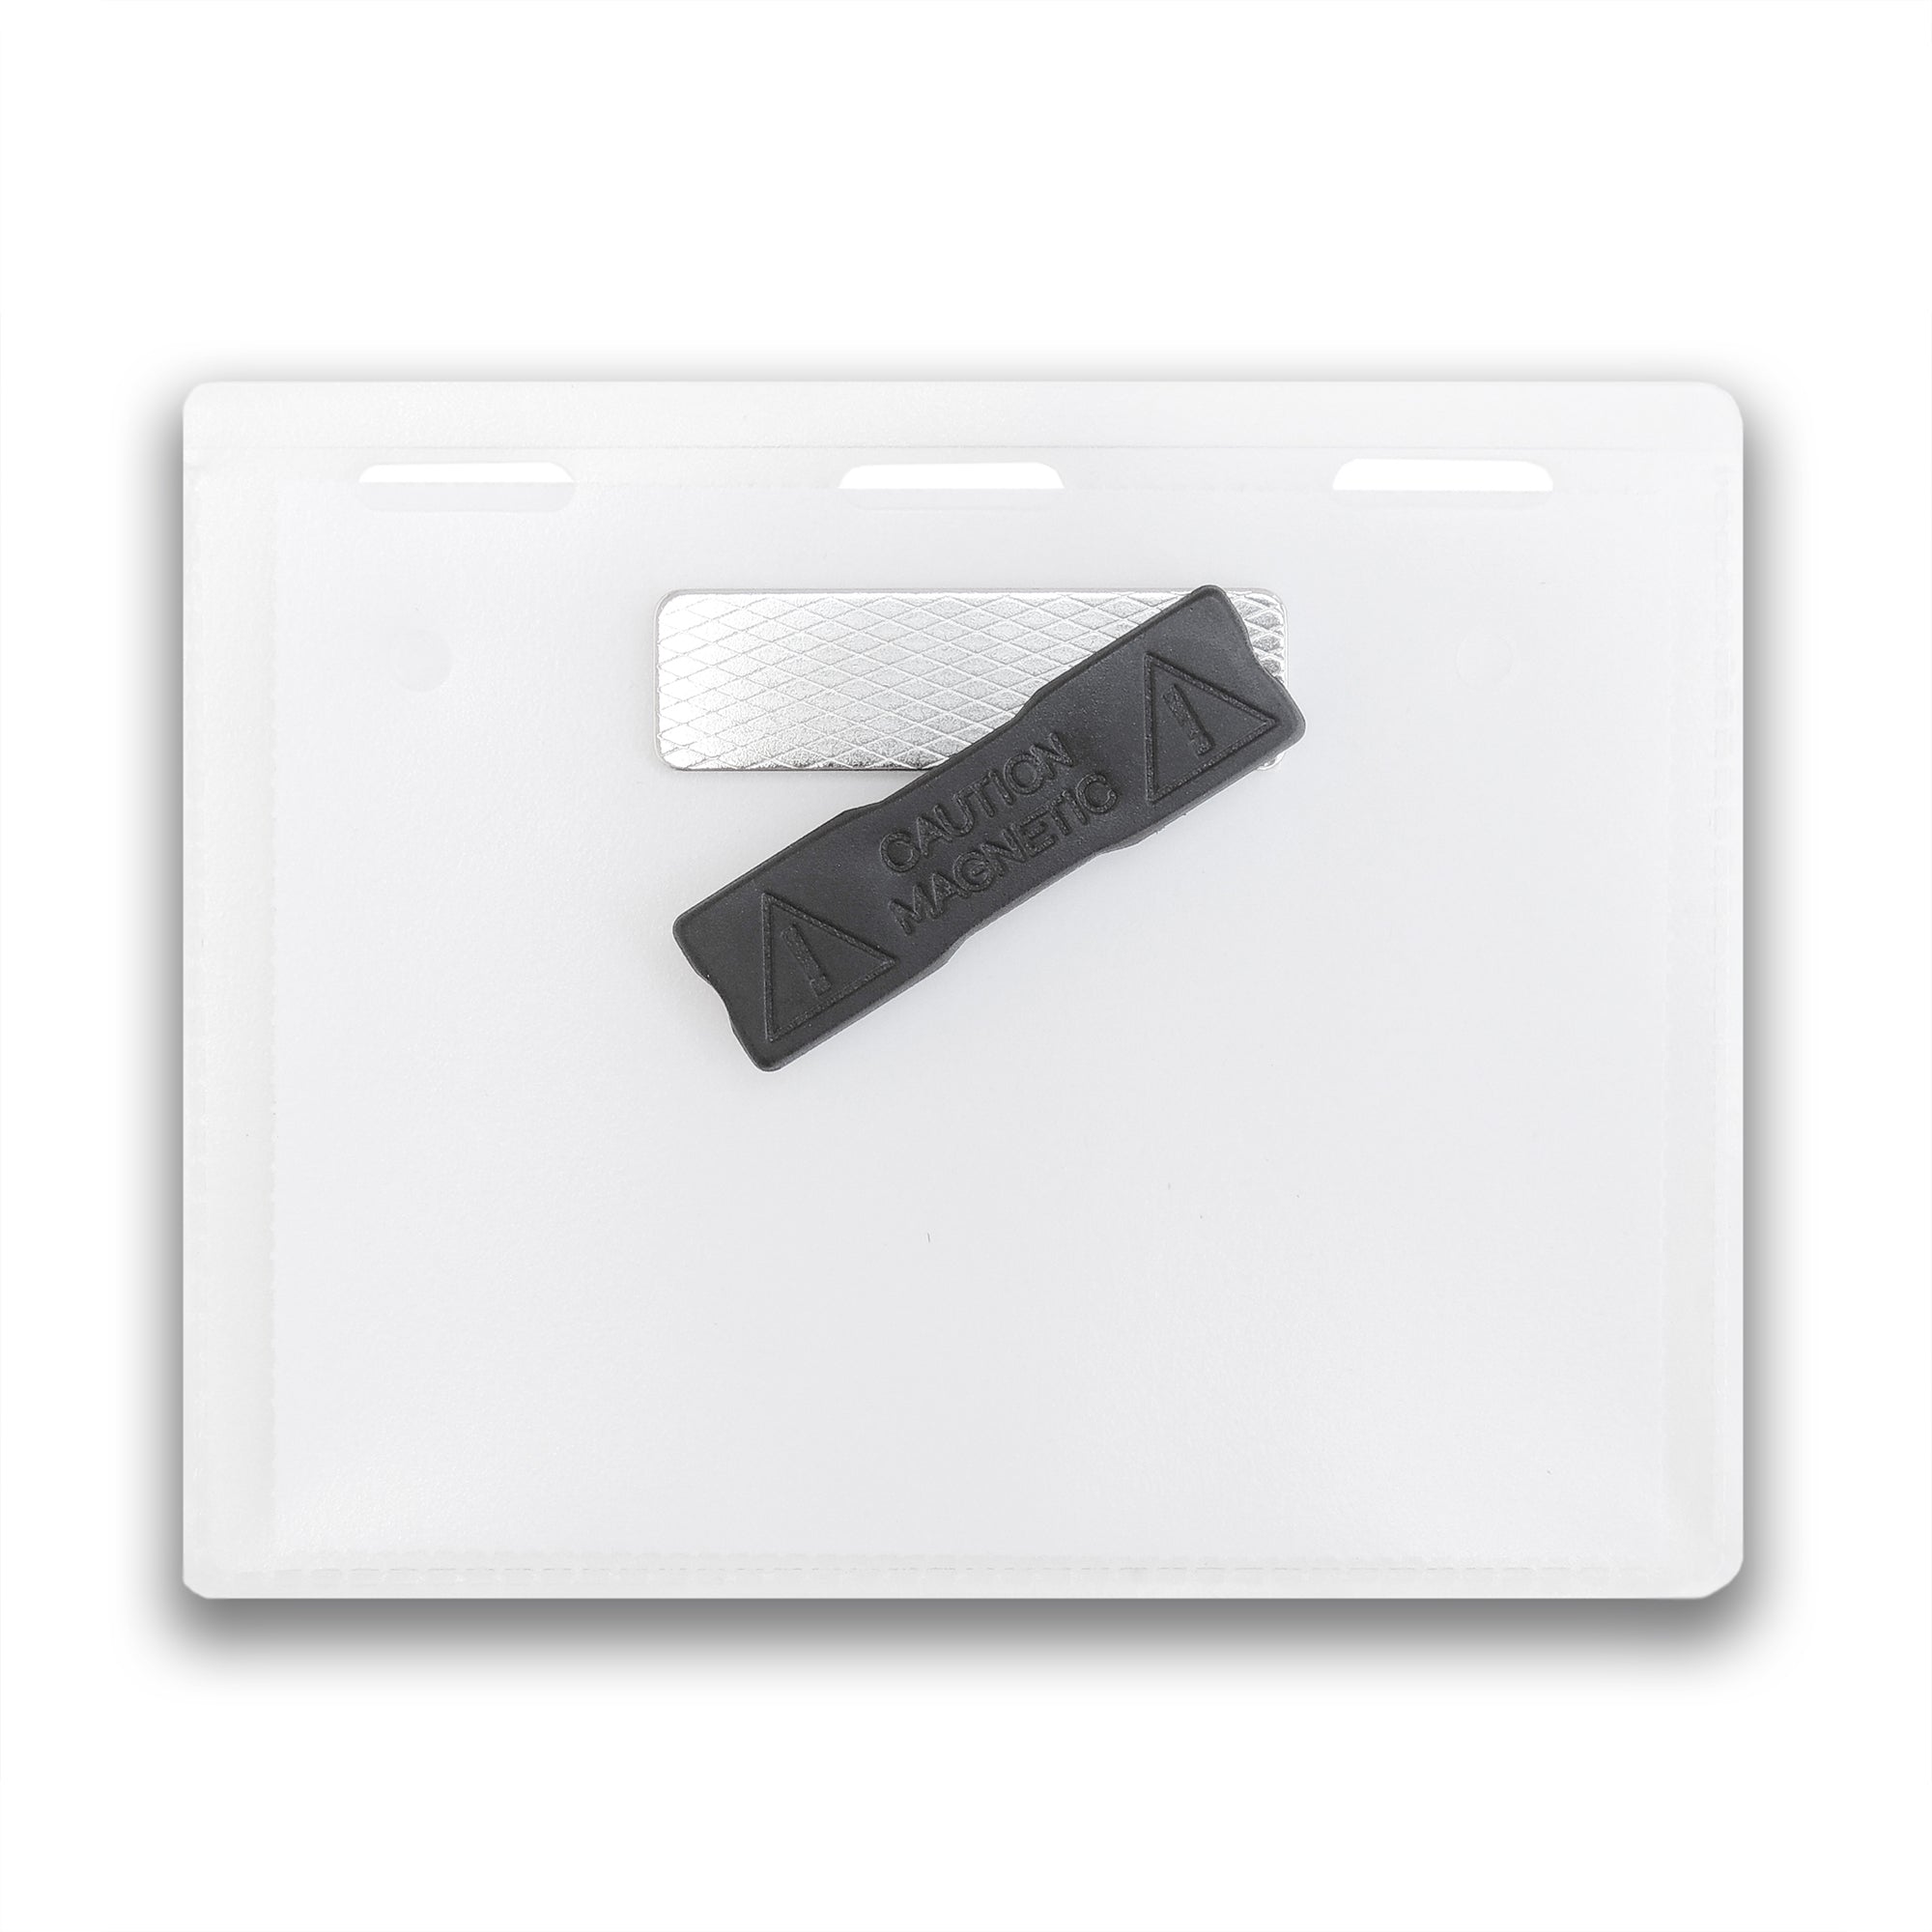  20 Pack of Magnetic Name Badge Holder Kit, 4” x 3